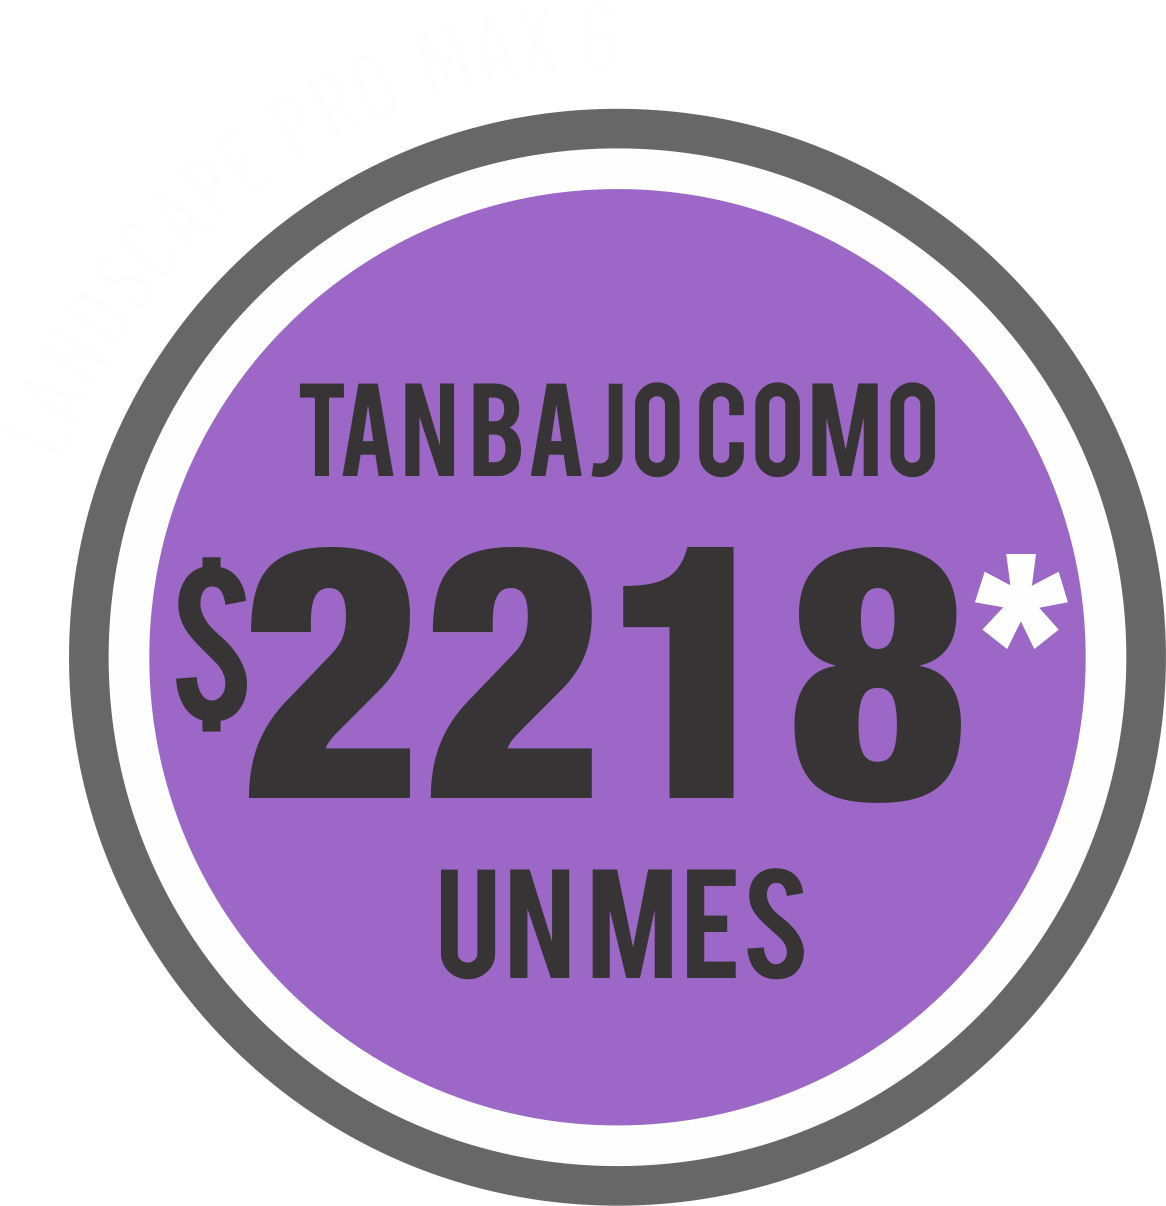 Landscape Pro Max 6 tanbajocomo $2218 unmes